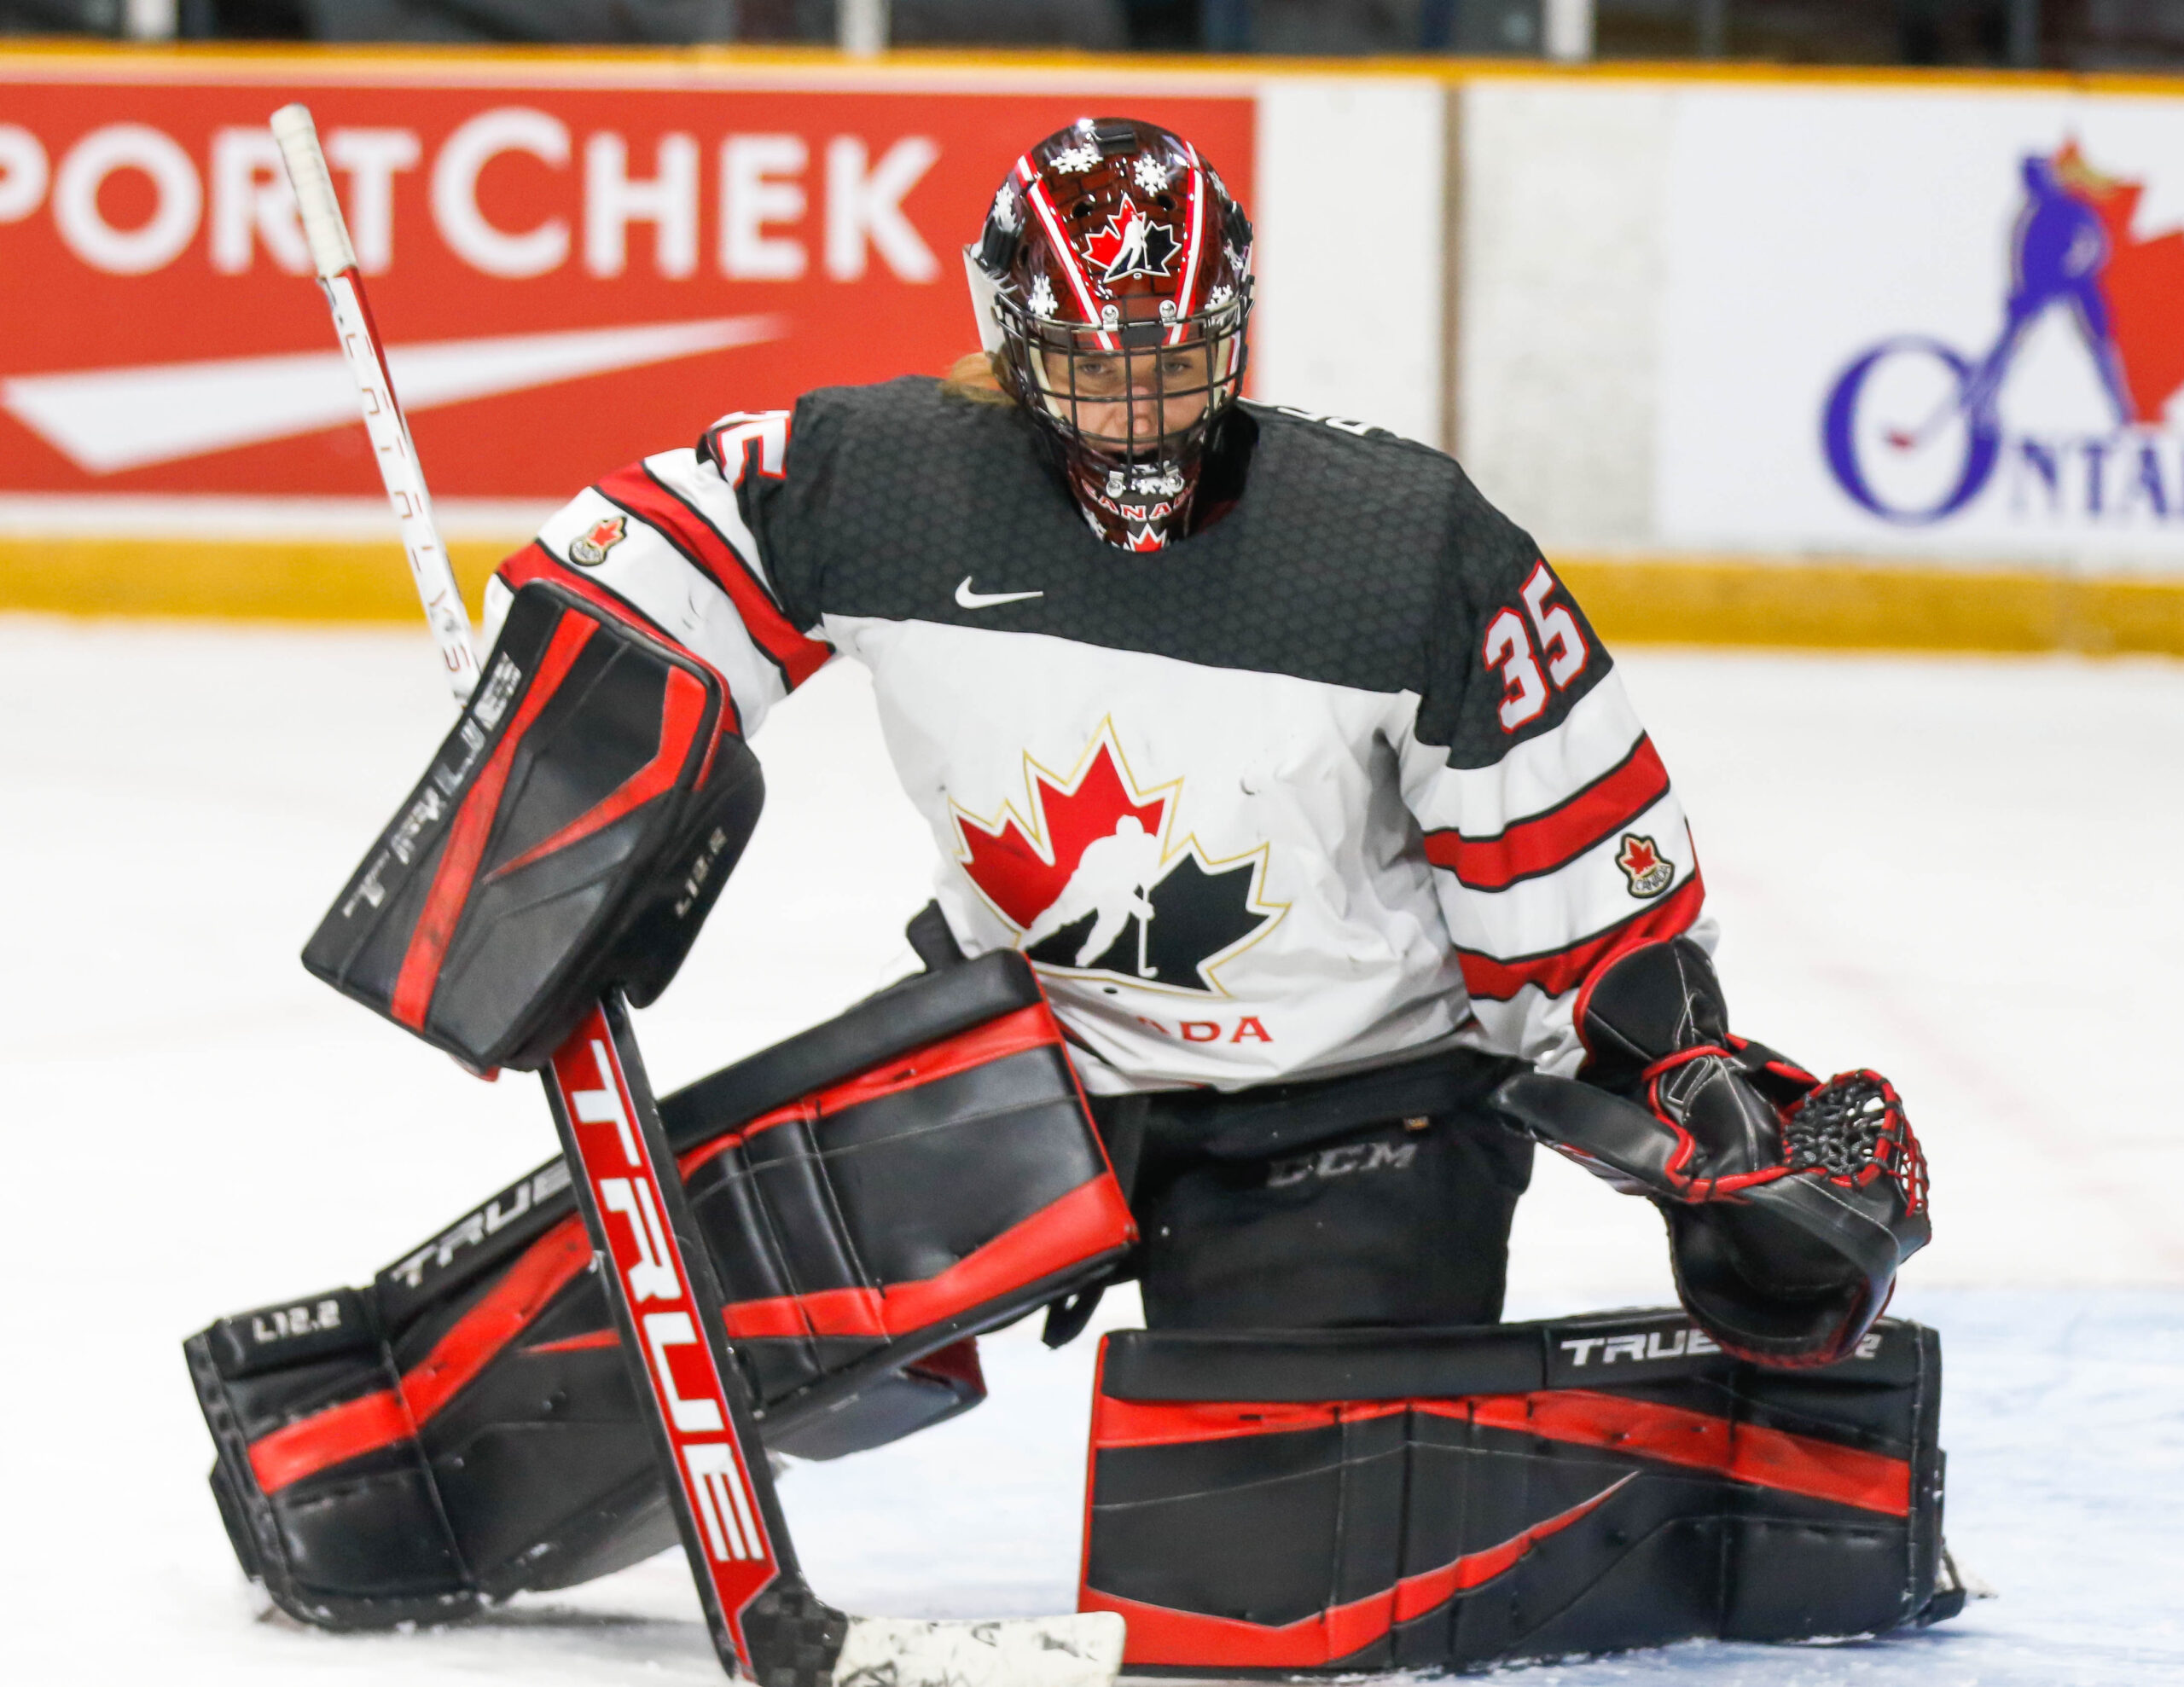 Kanada porazila Česko před zápasem s USA – Hockey Writers –